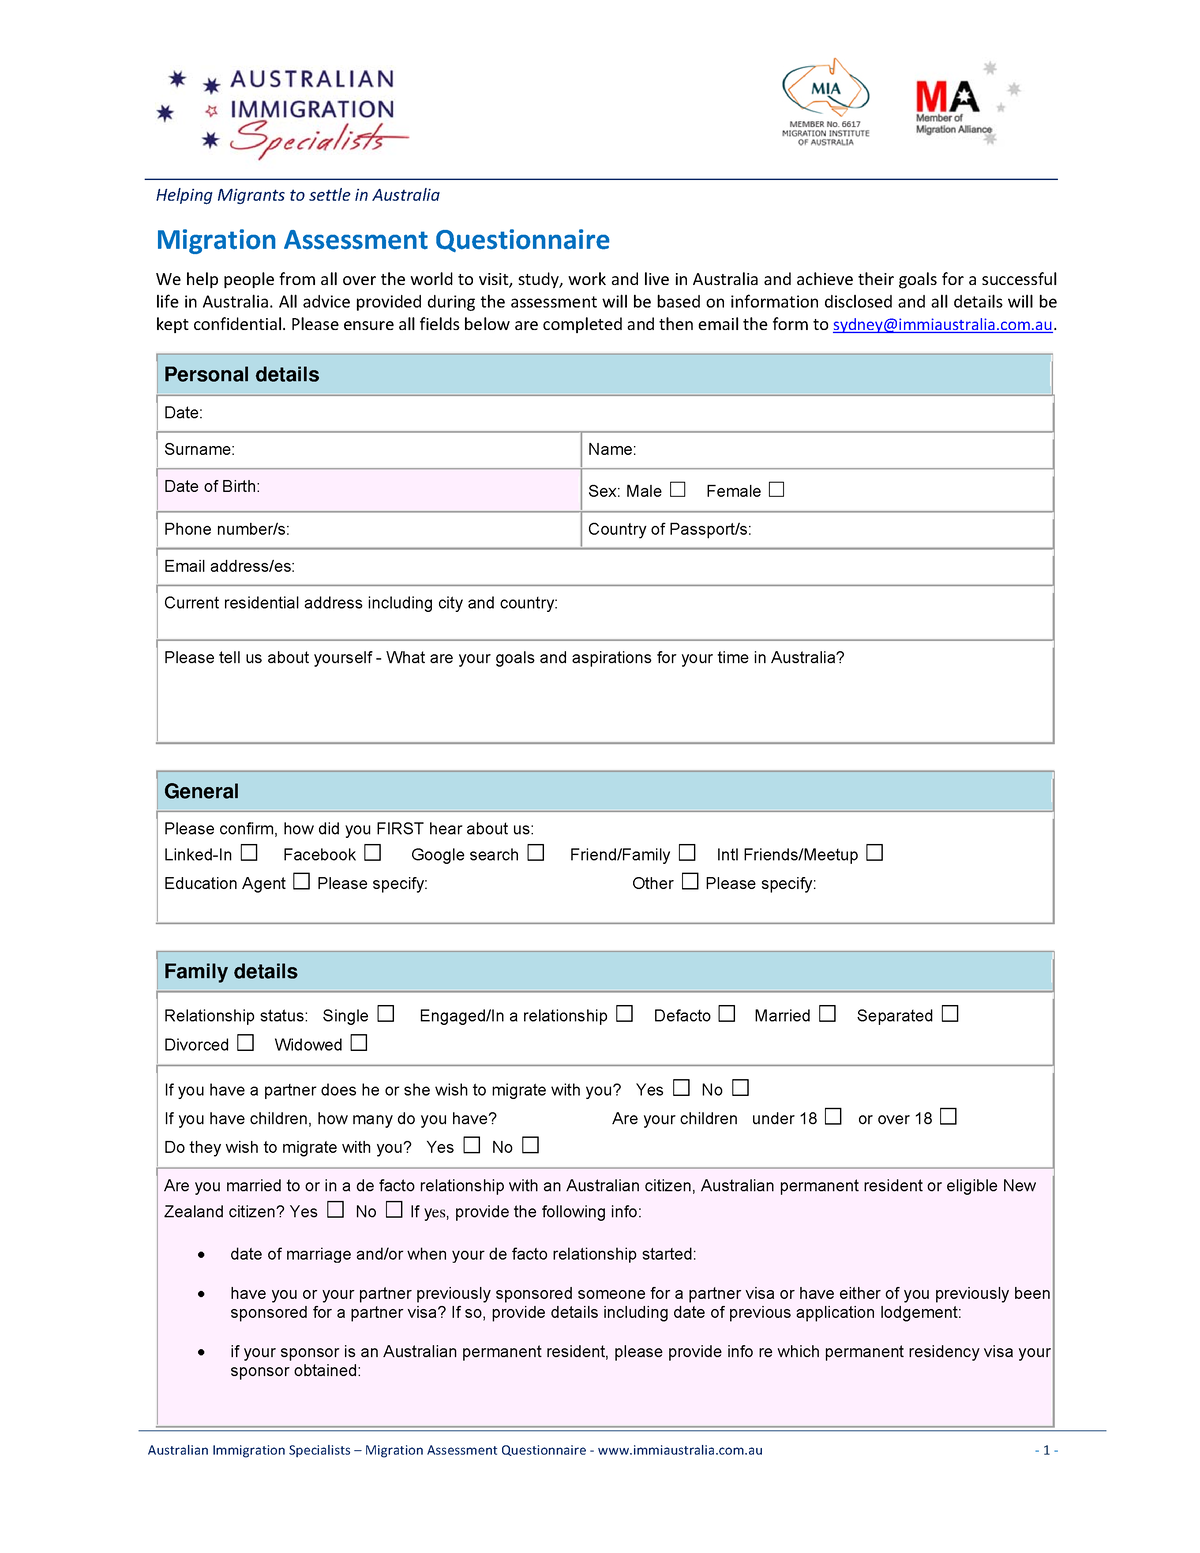 AIS Migration Assessment Questionnaire - Migration Assessment ...